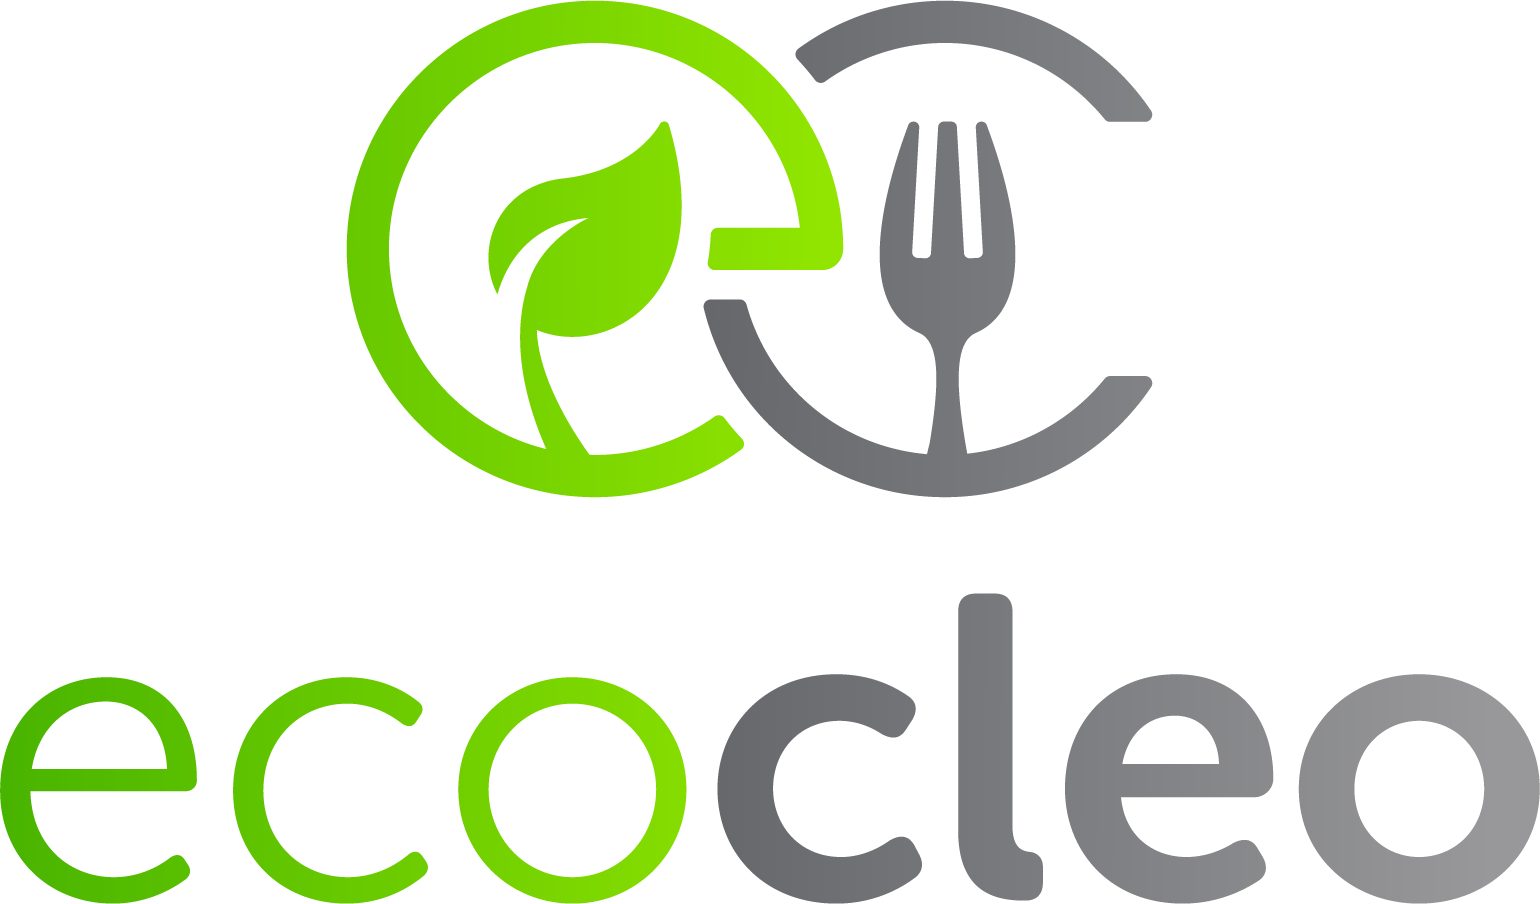 Ecocleo